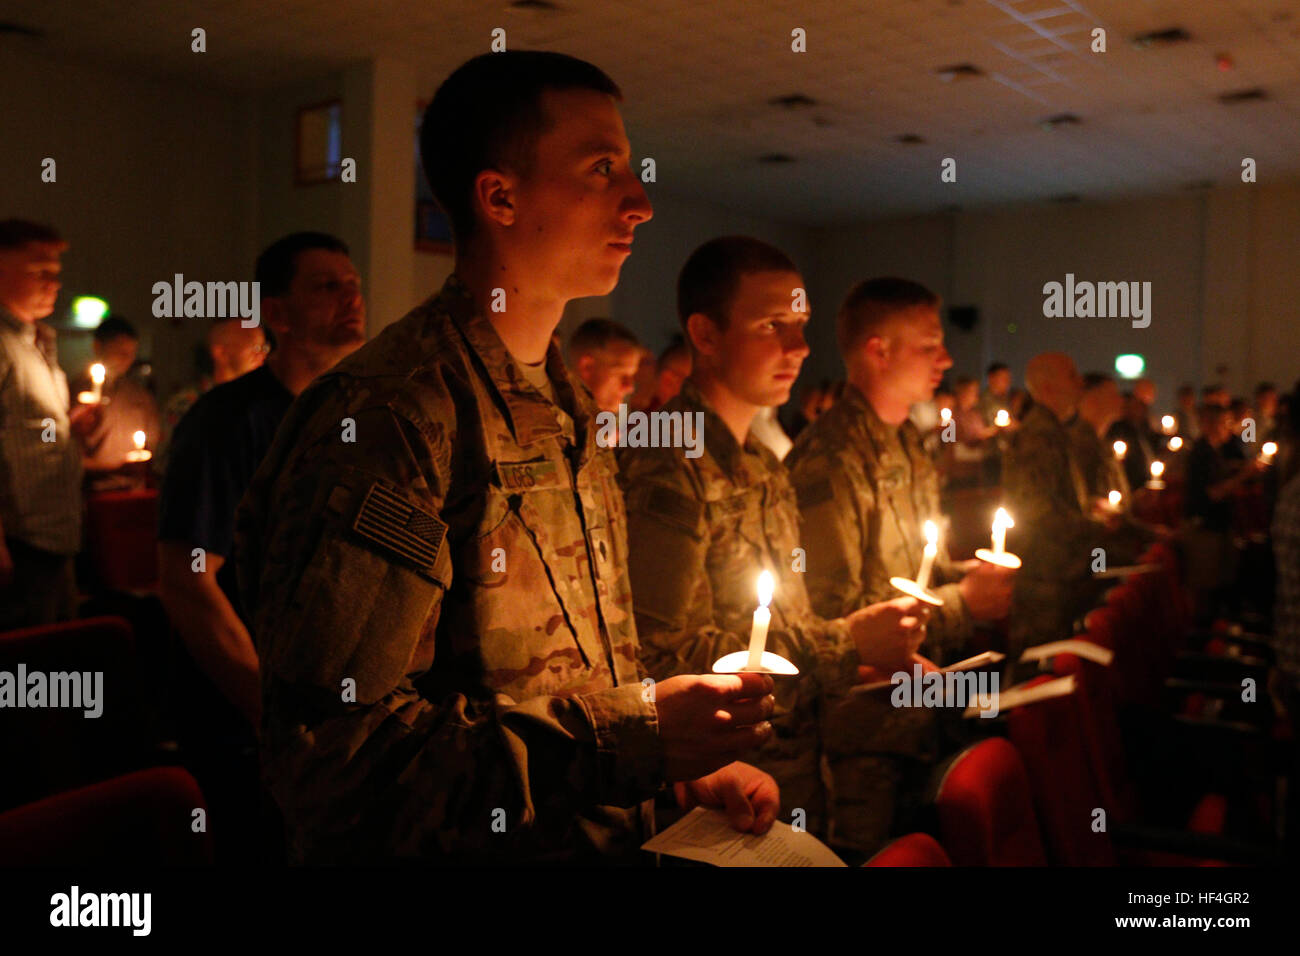 Soldados estadounidenses participar en un servicio de vacaciones a la luz de las velas en la víspera de Navidad en el Campamento Arifjan el 24 de diciembre de 2016 en Kuwait. Foto de stock